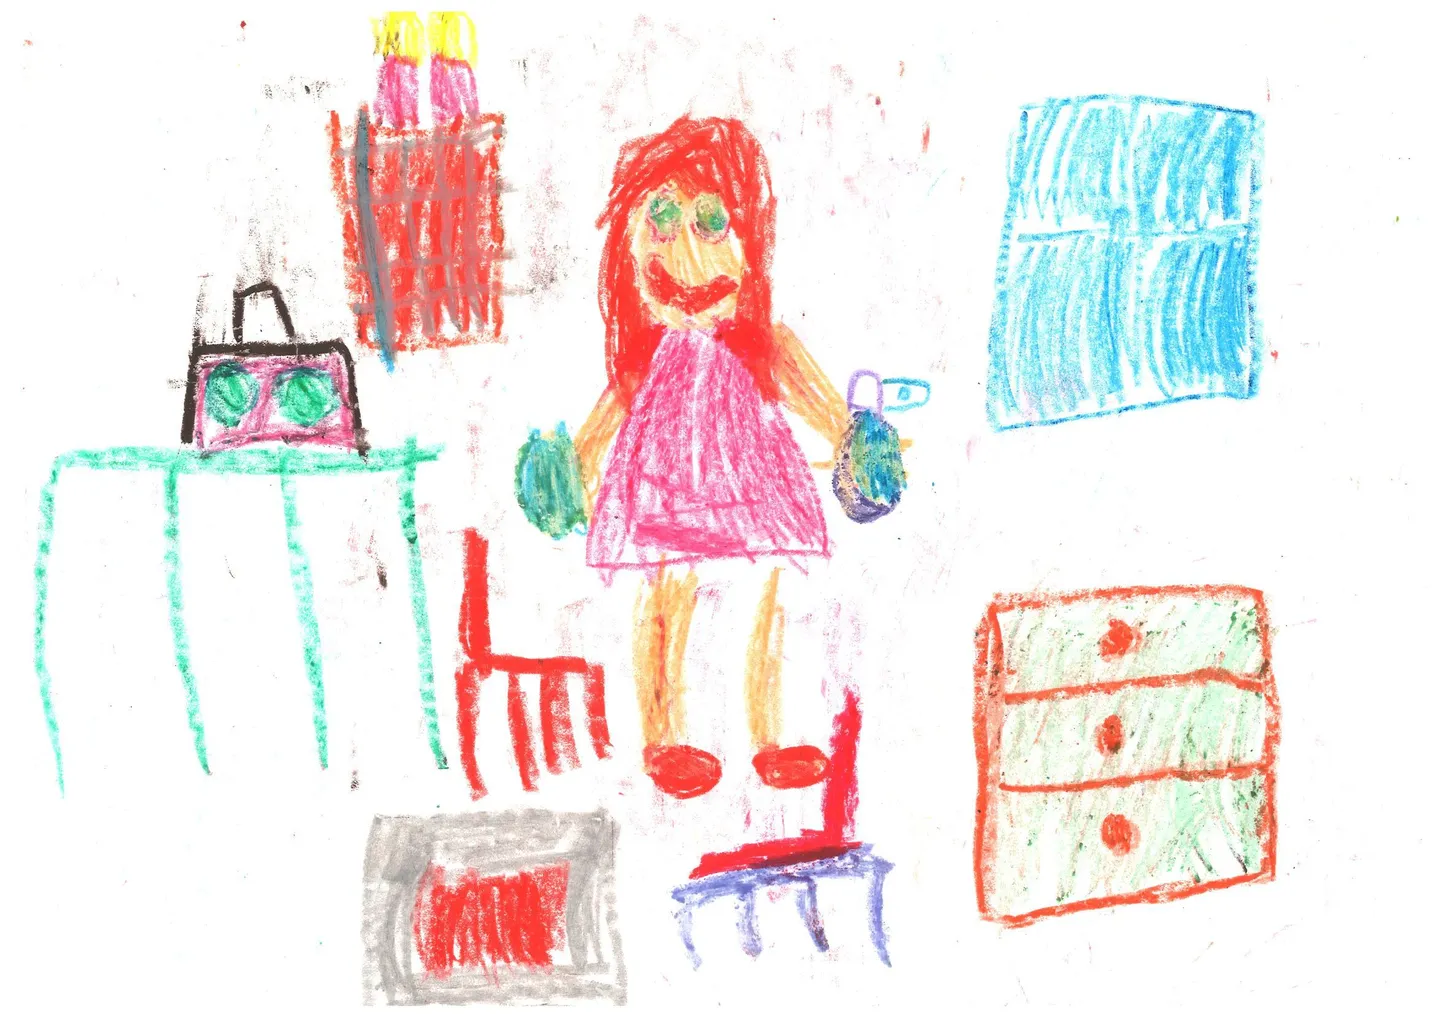 Swedbanki kontoris on Sakala kalendri joonistusvõitluse "Mina märkan" võidutööd. Selle pildi on joonistanud 6 aastane Miia Kristelle Sau, Mängupesa lasteaia Pärnaõite rühmast.